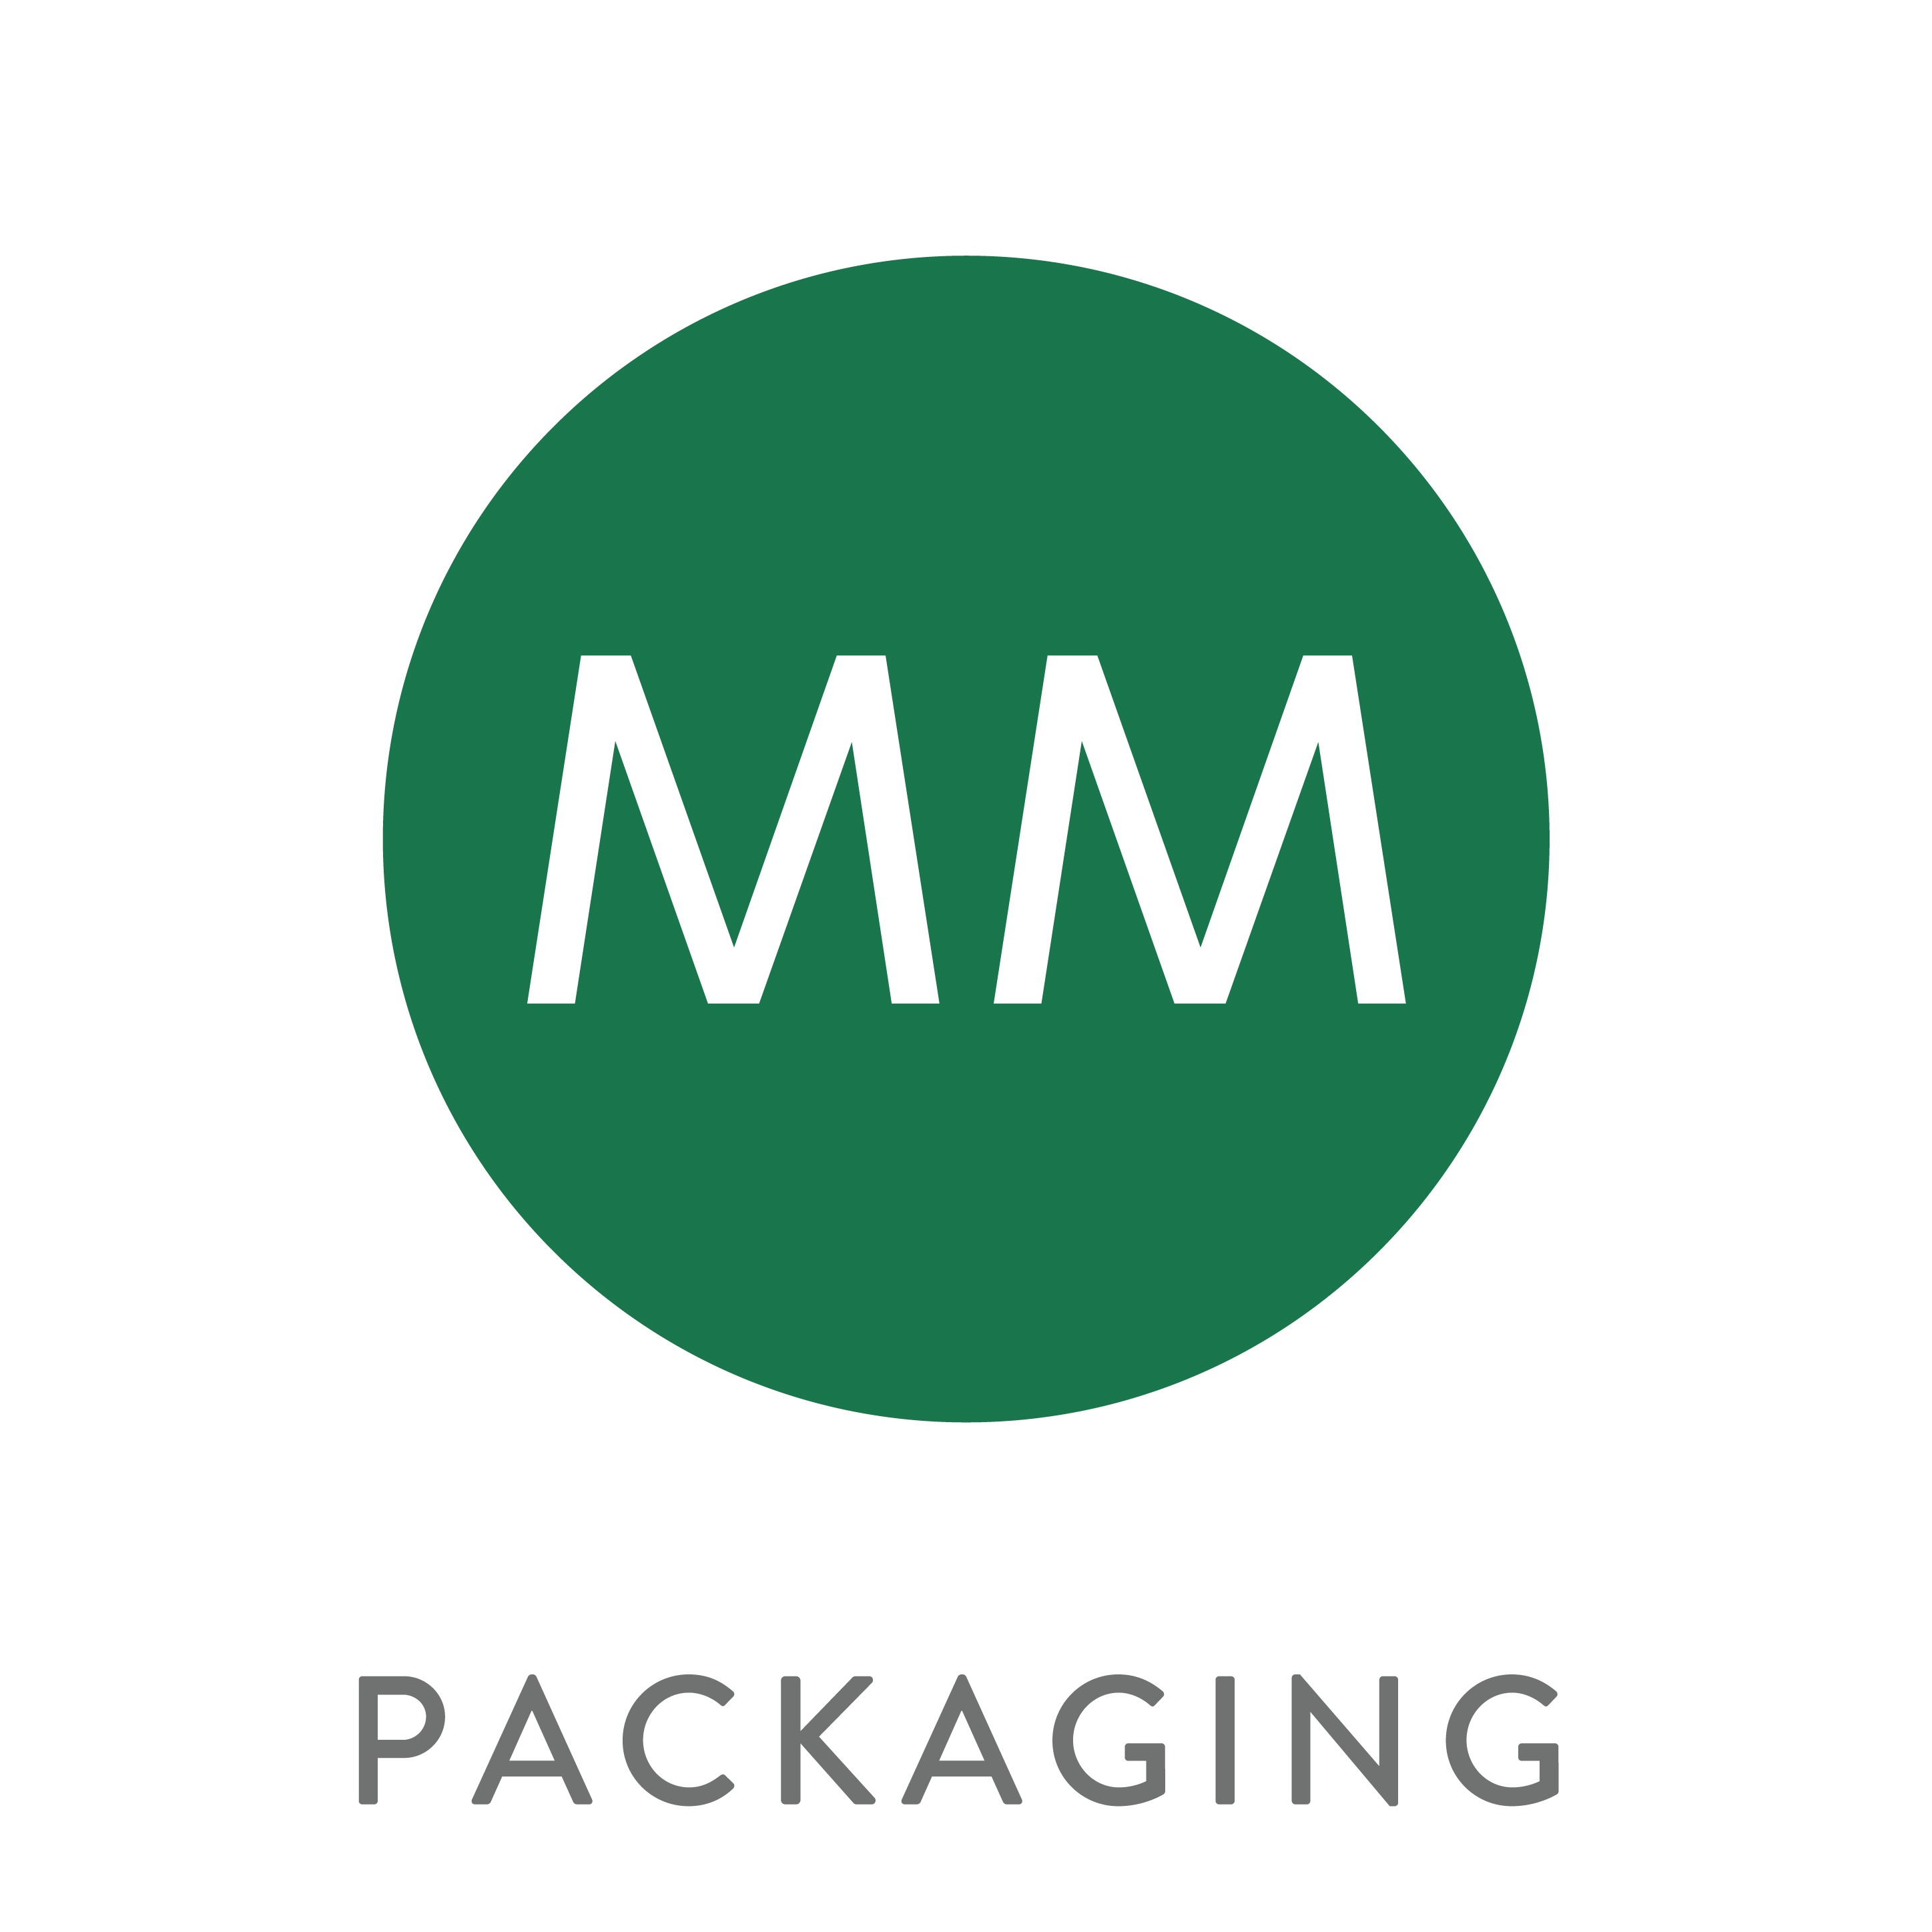 MM packaging